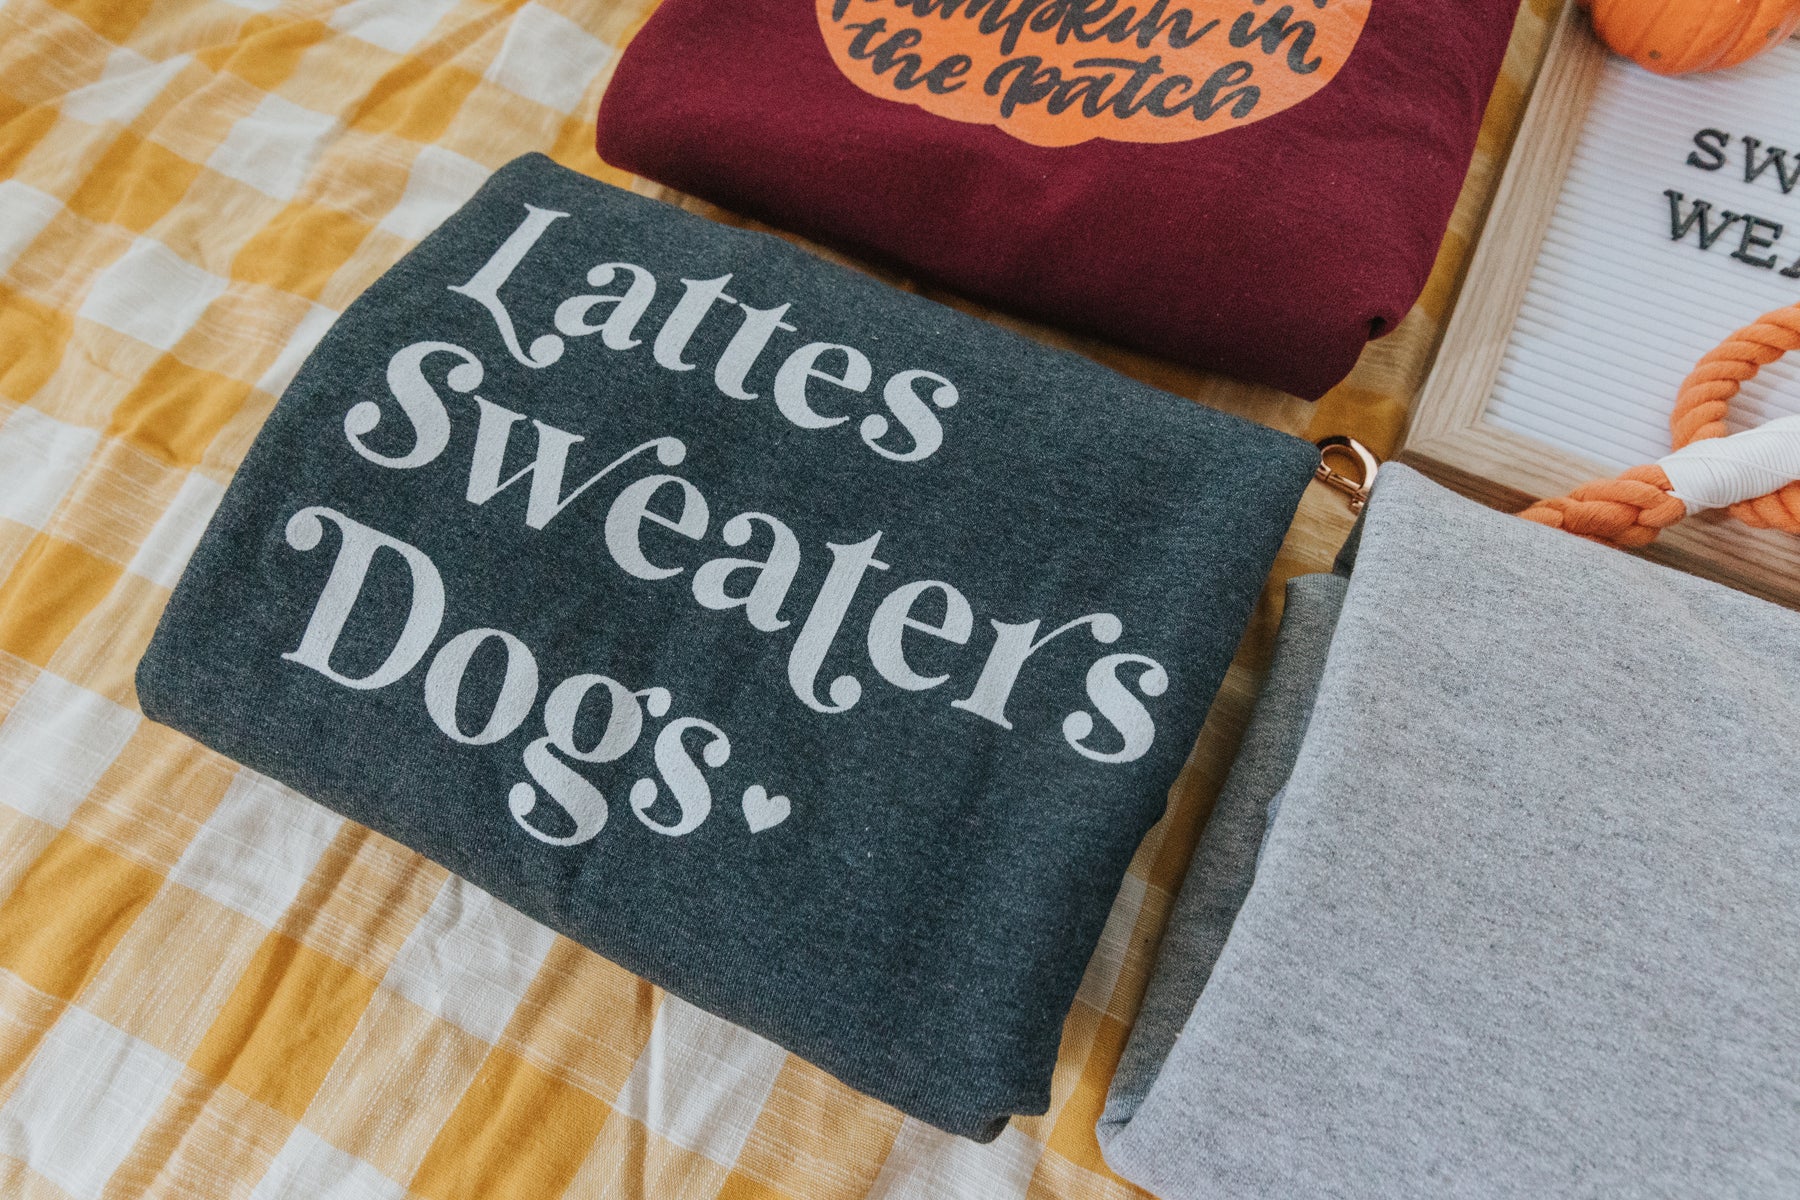 Lattes, Sweaters, Dogs Sweatshirt